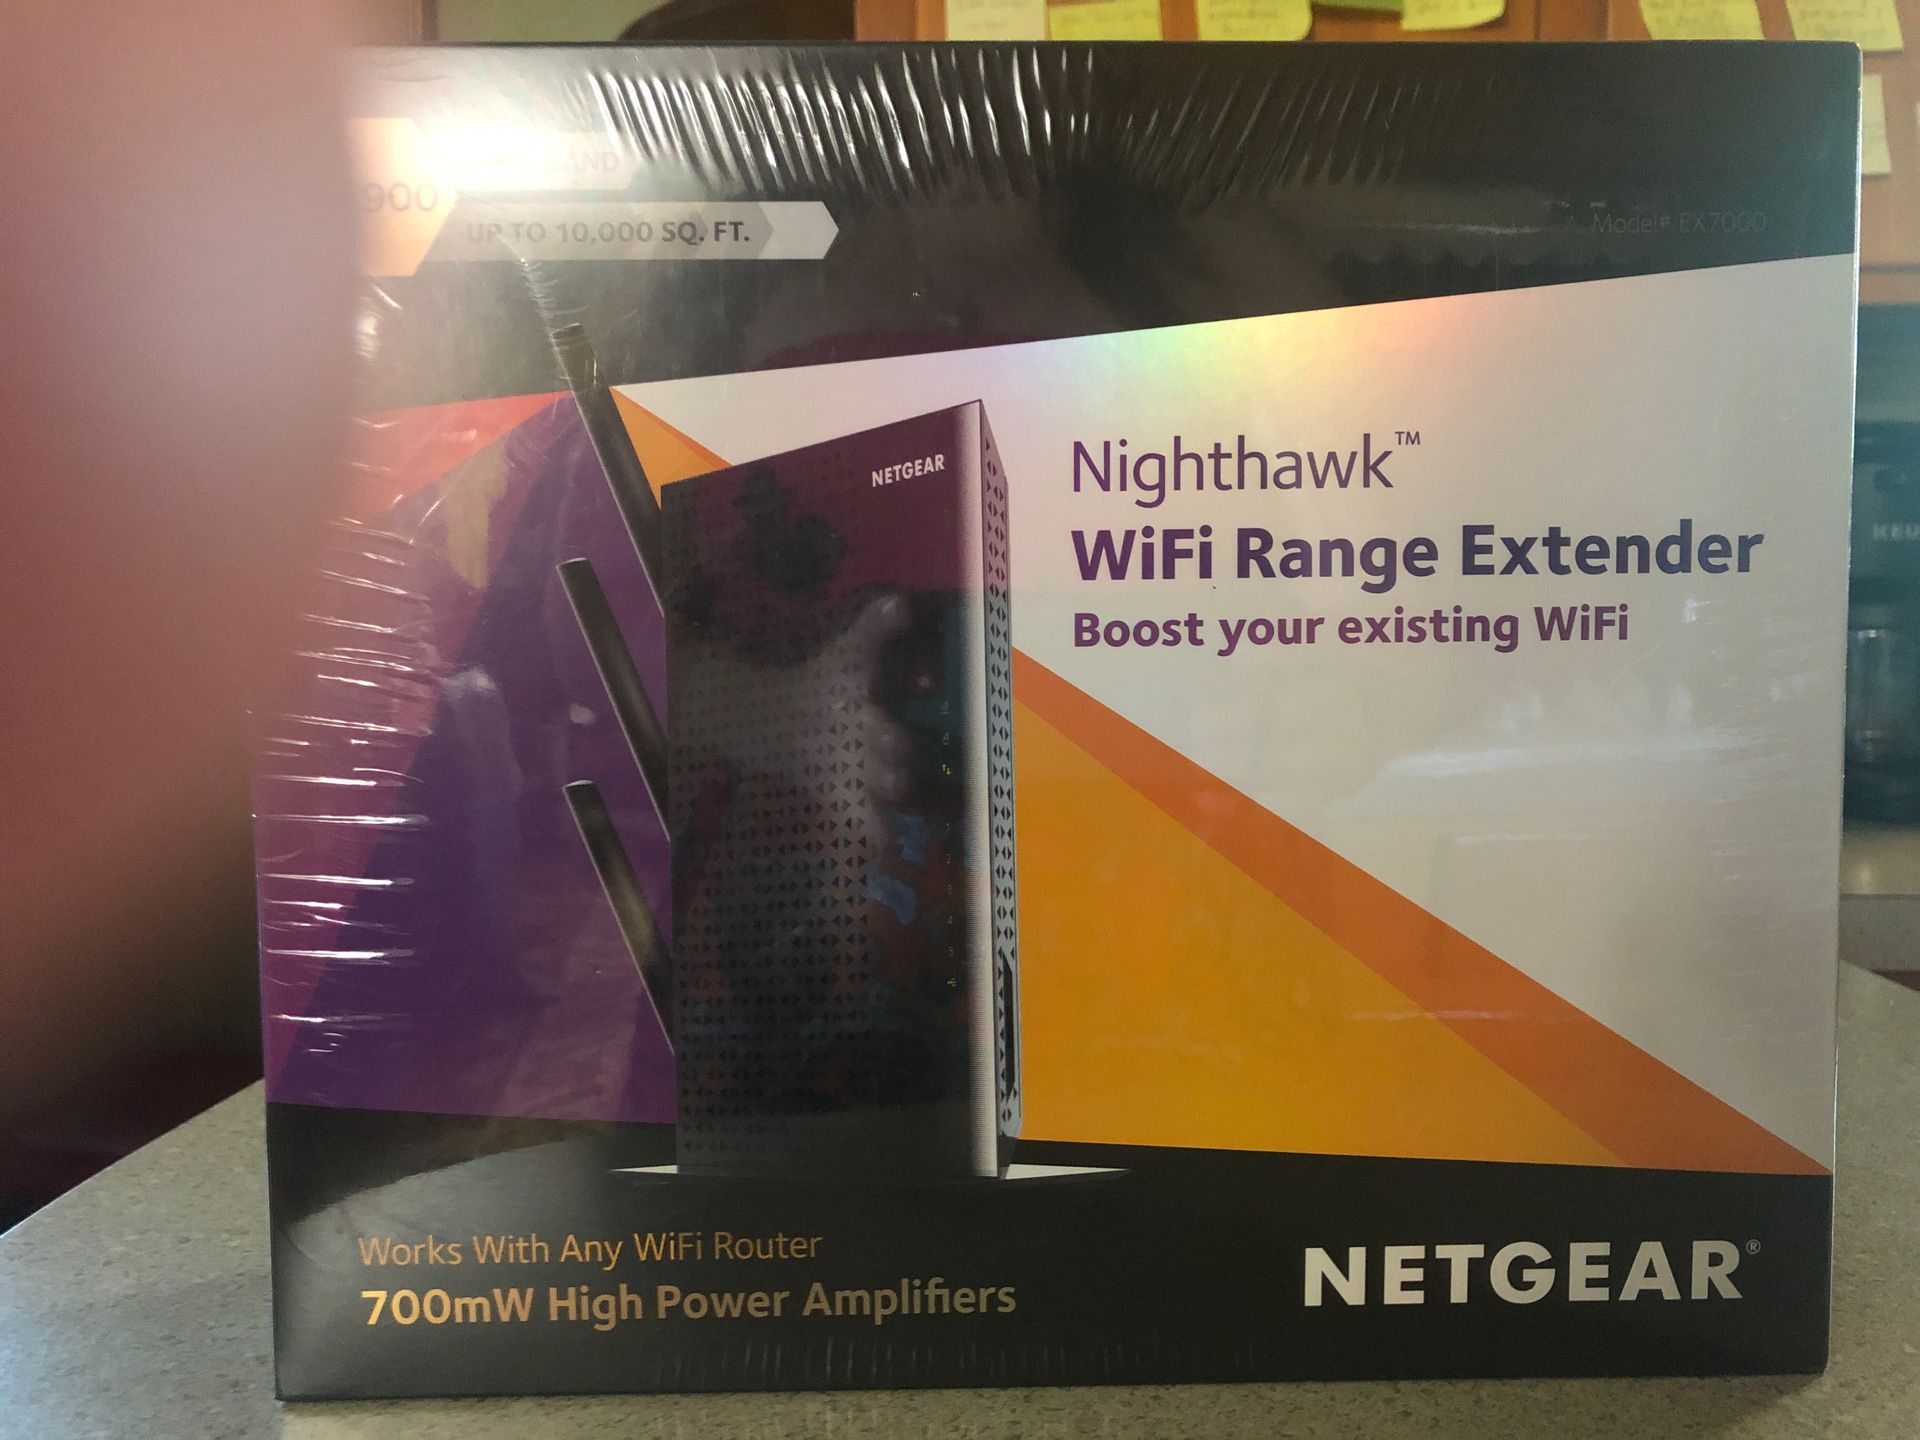 NETGEAR -Nighthawk - WiFi Range Extender